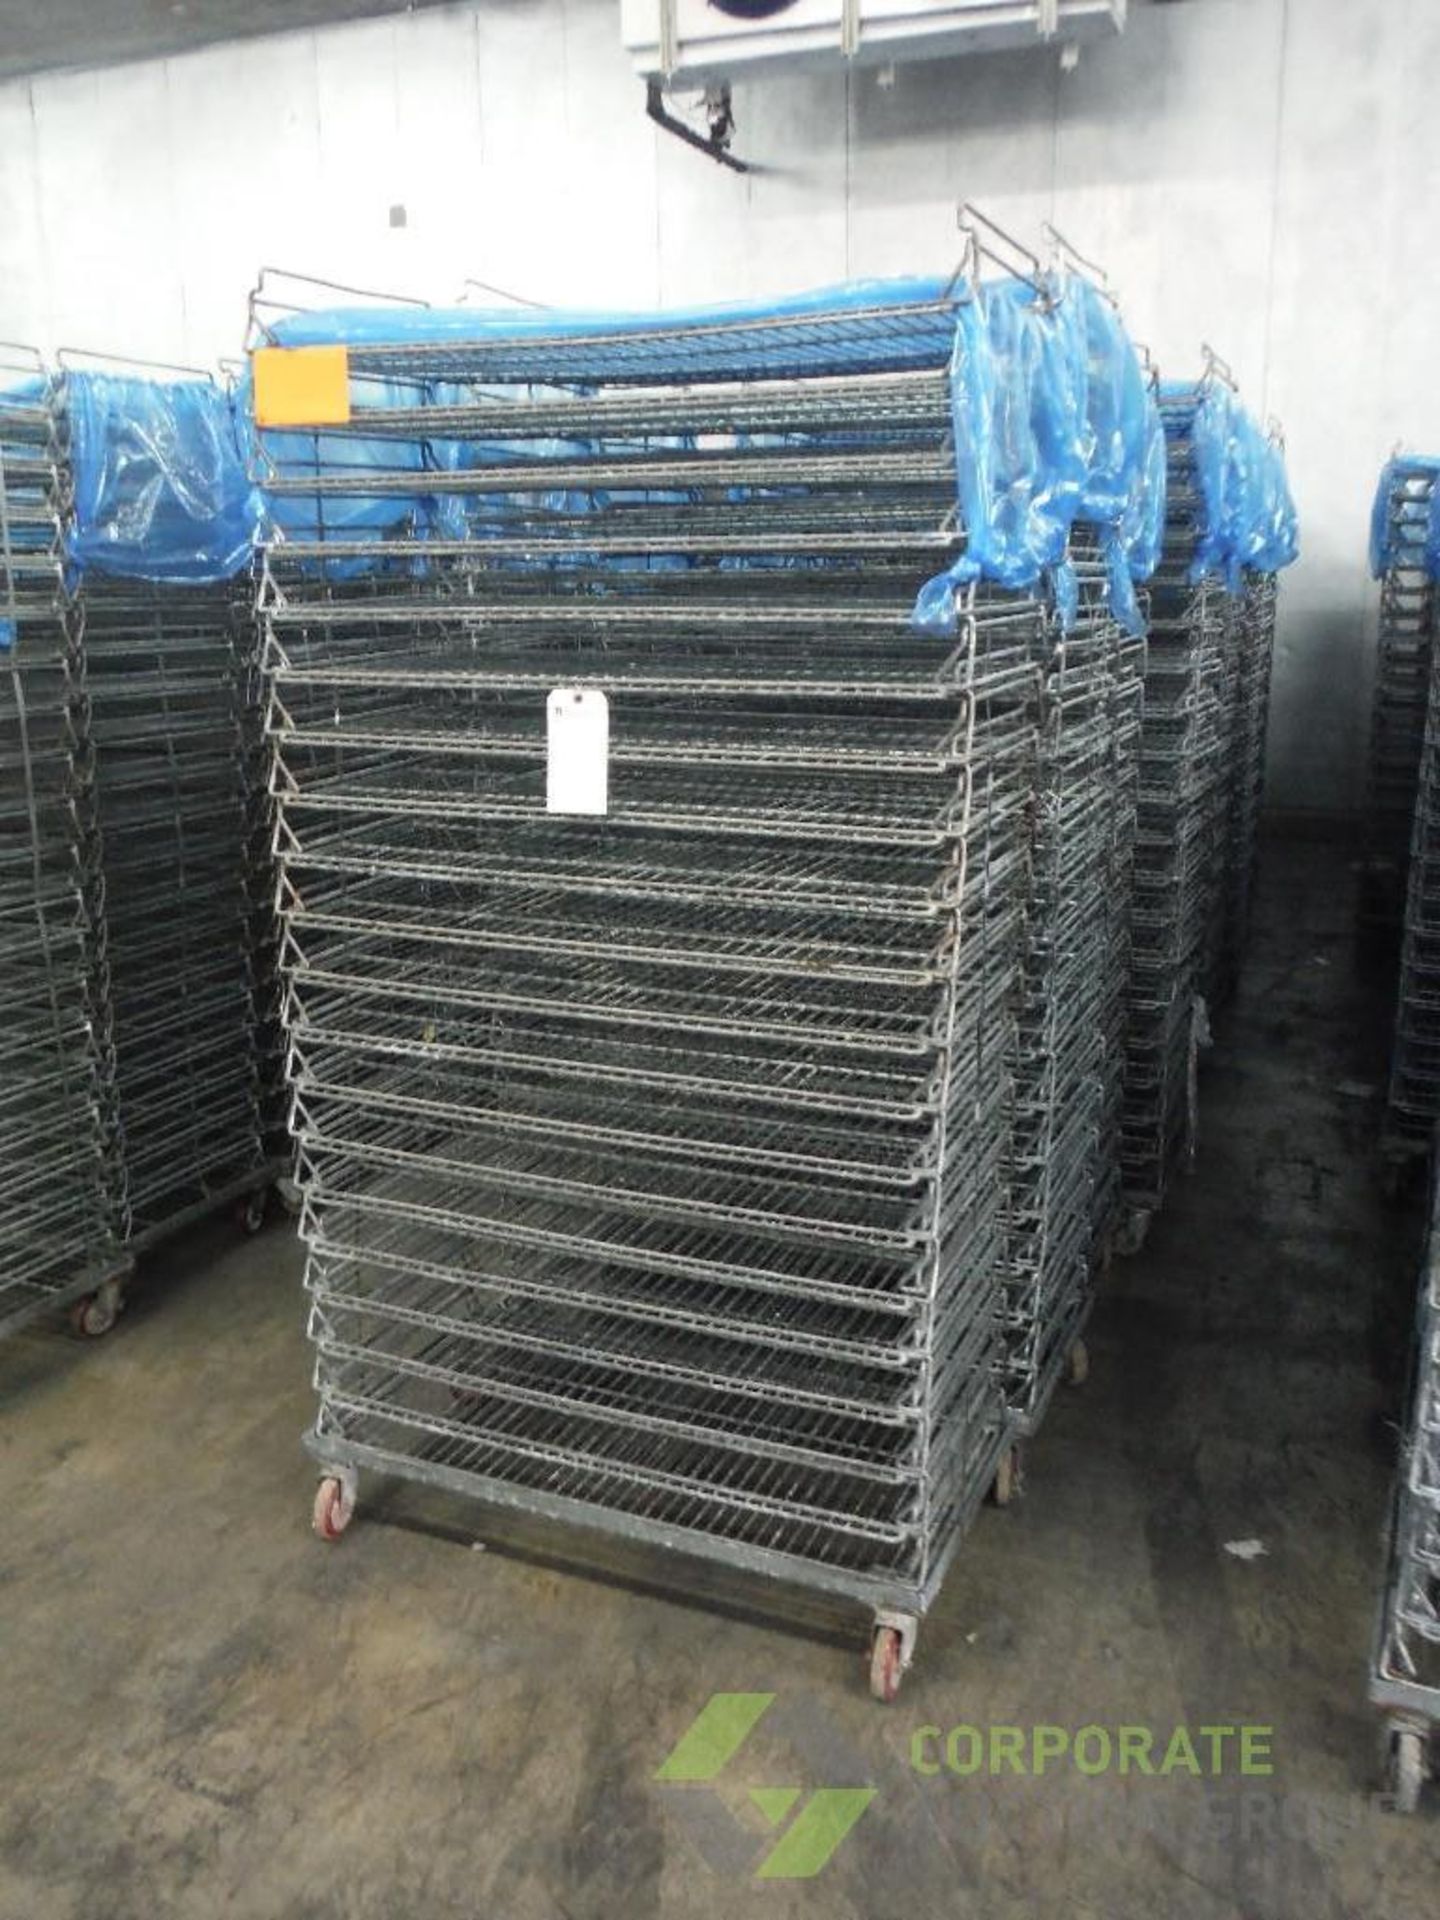 Mild steel stackable bakery racks, 39 in. long x 19 in. wide x 76 in. tall, 20 shelves, 2.75 in.